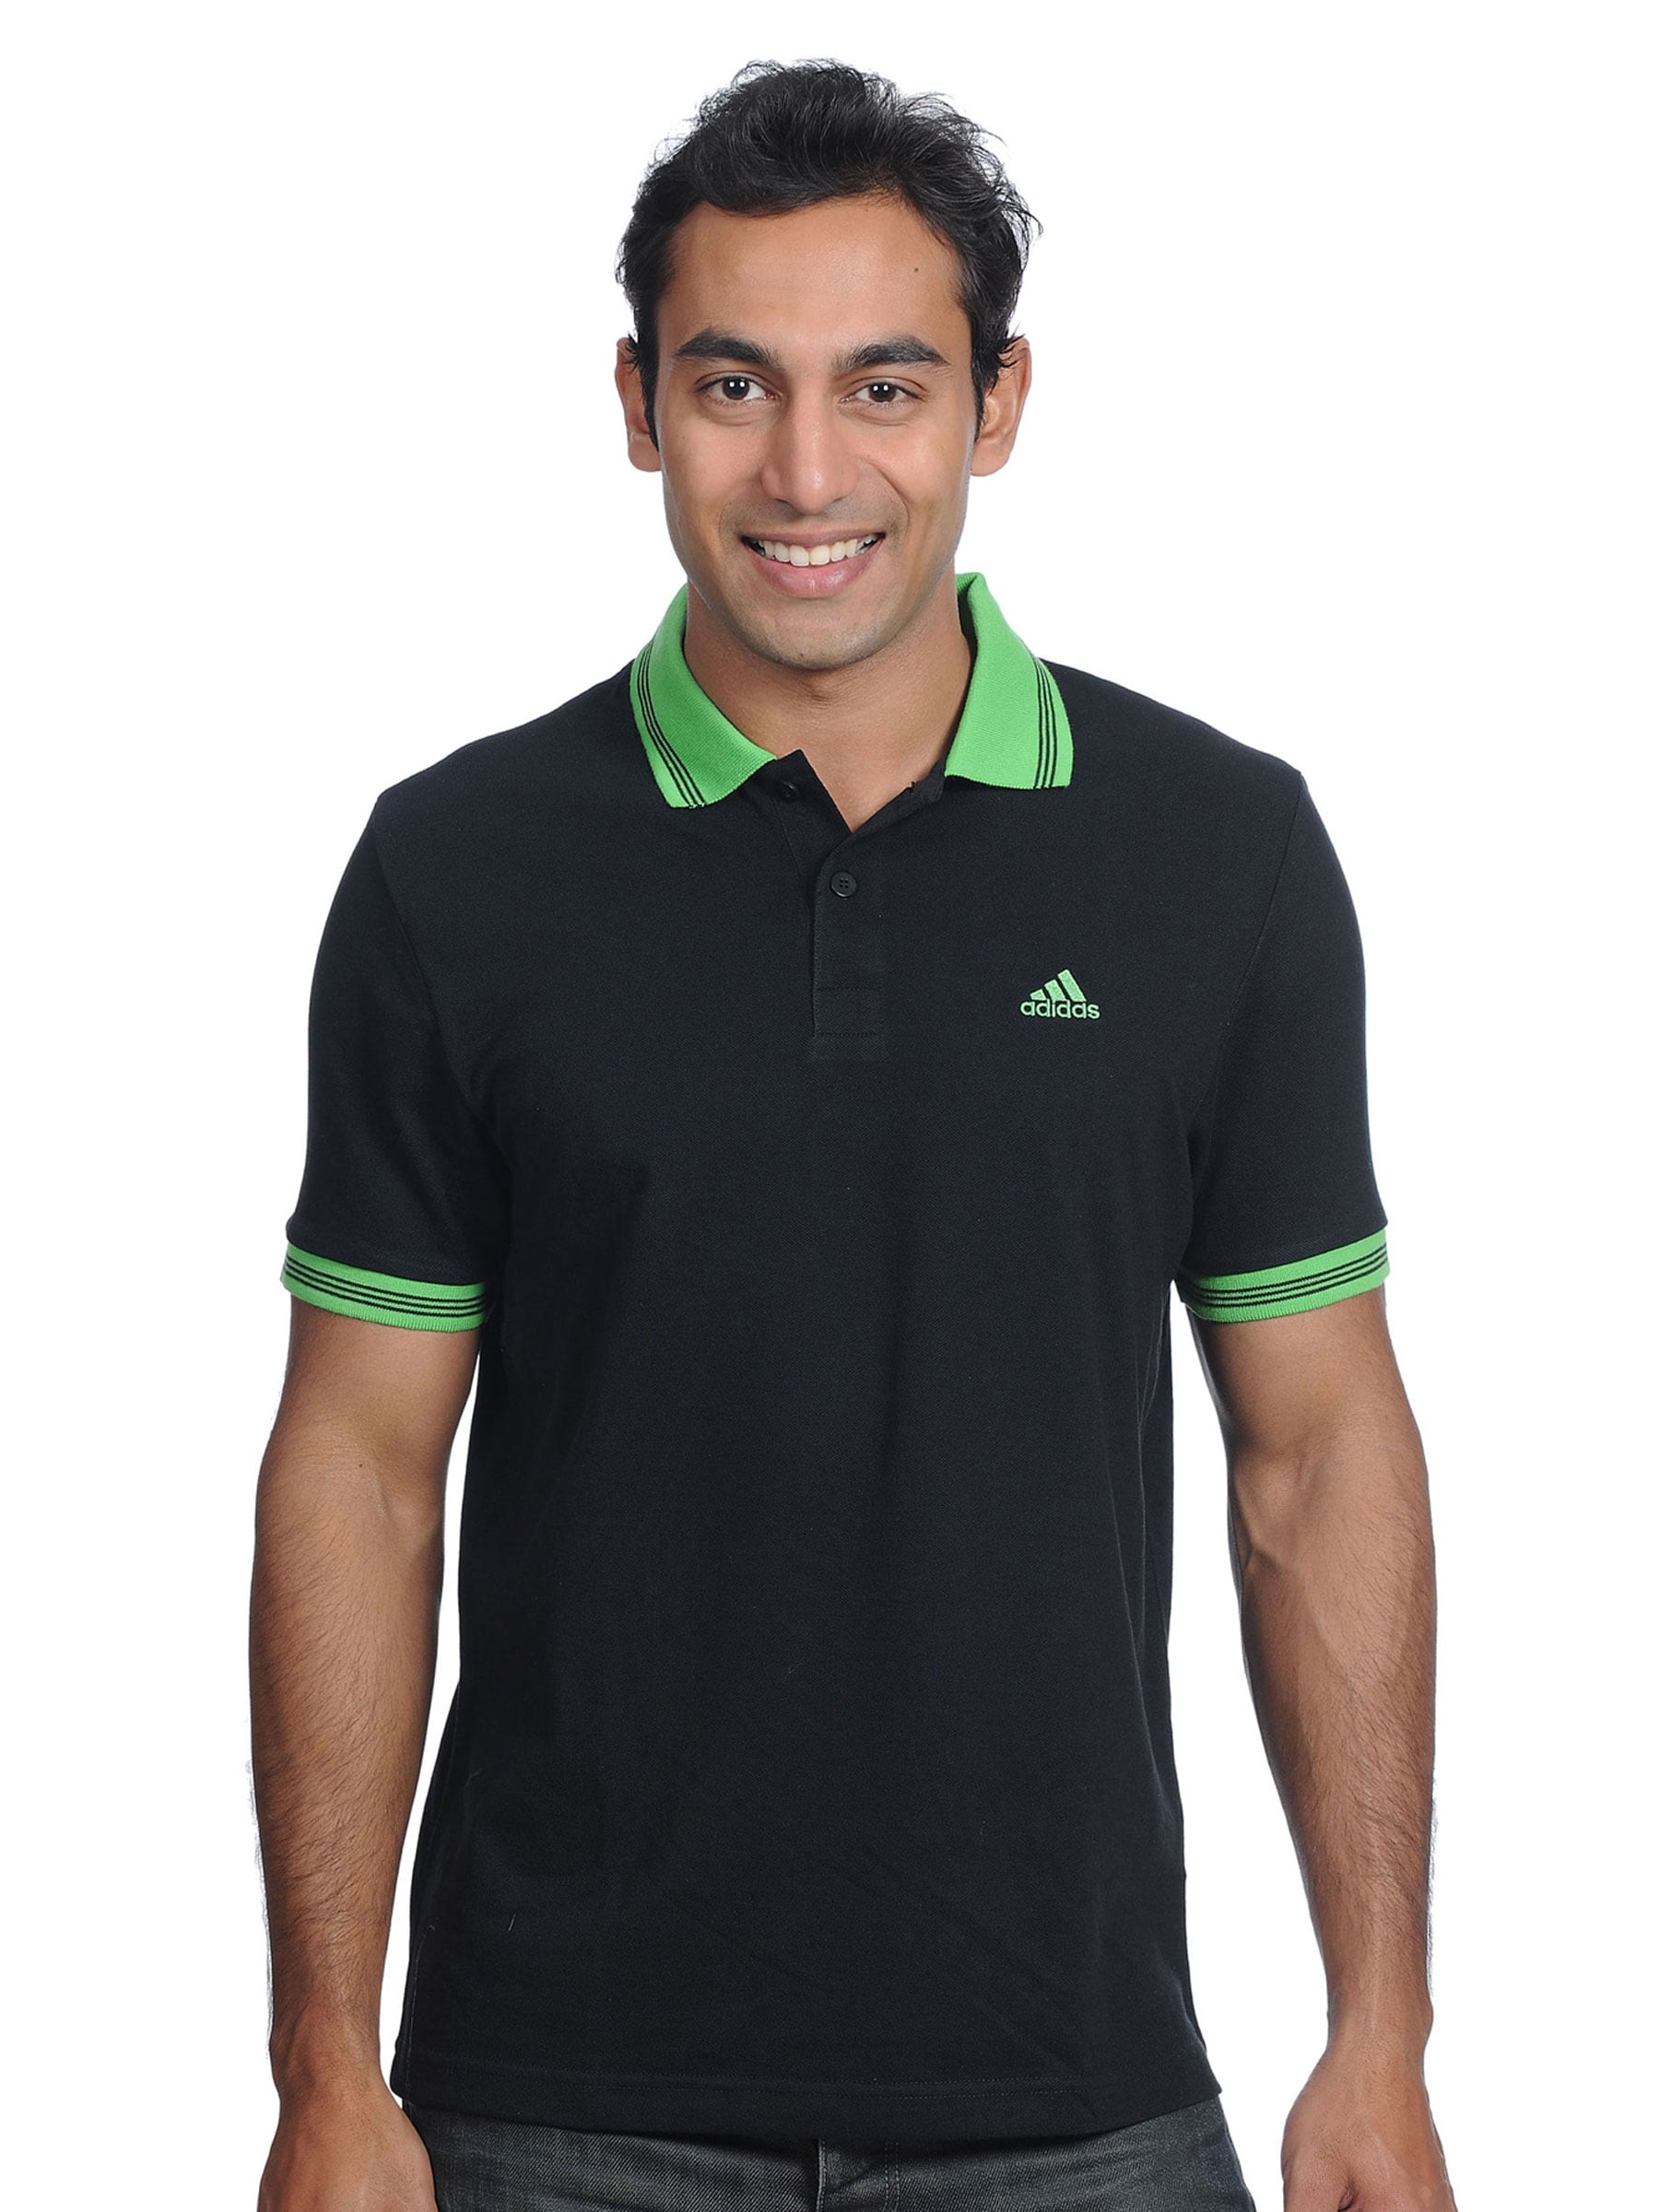 ADIDAS Mens Polo Black Polo T-shirt